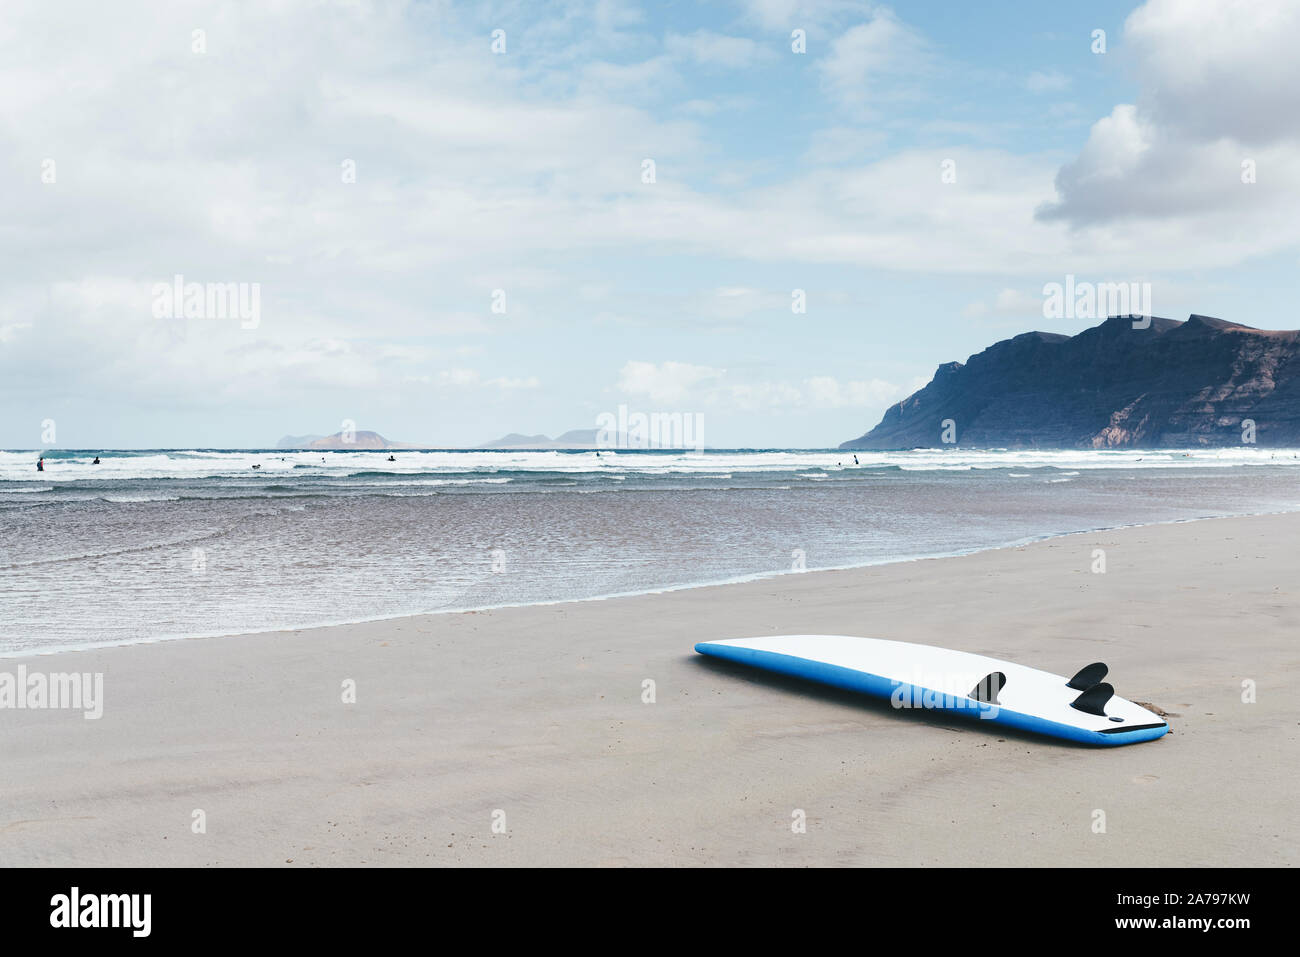 Las tablas de surf boca abajo sobre una amplia playa arenosa contra el mar y las montañas en día ventoso Foto de stock